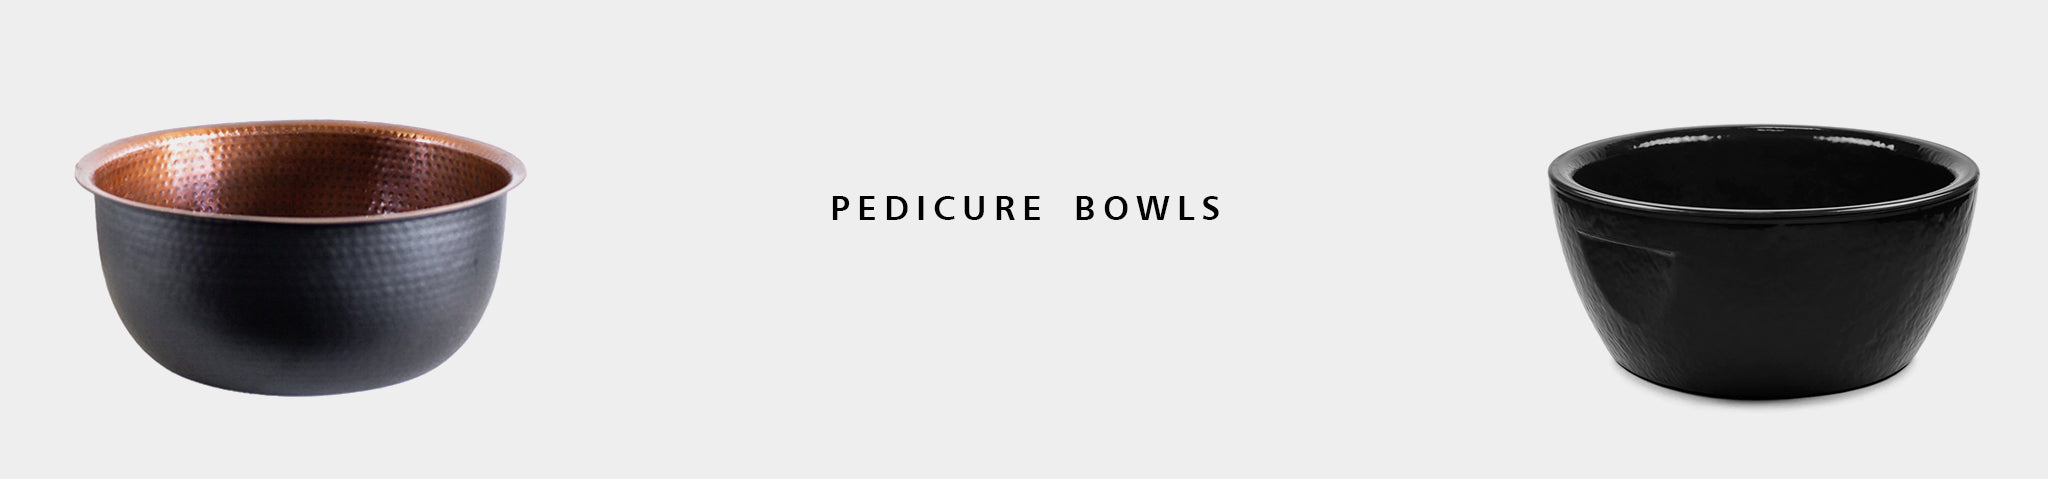 Pedicure Bowls, Tubs and Basins